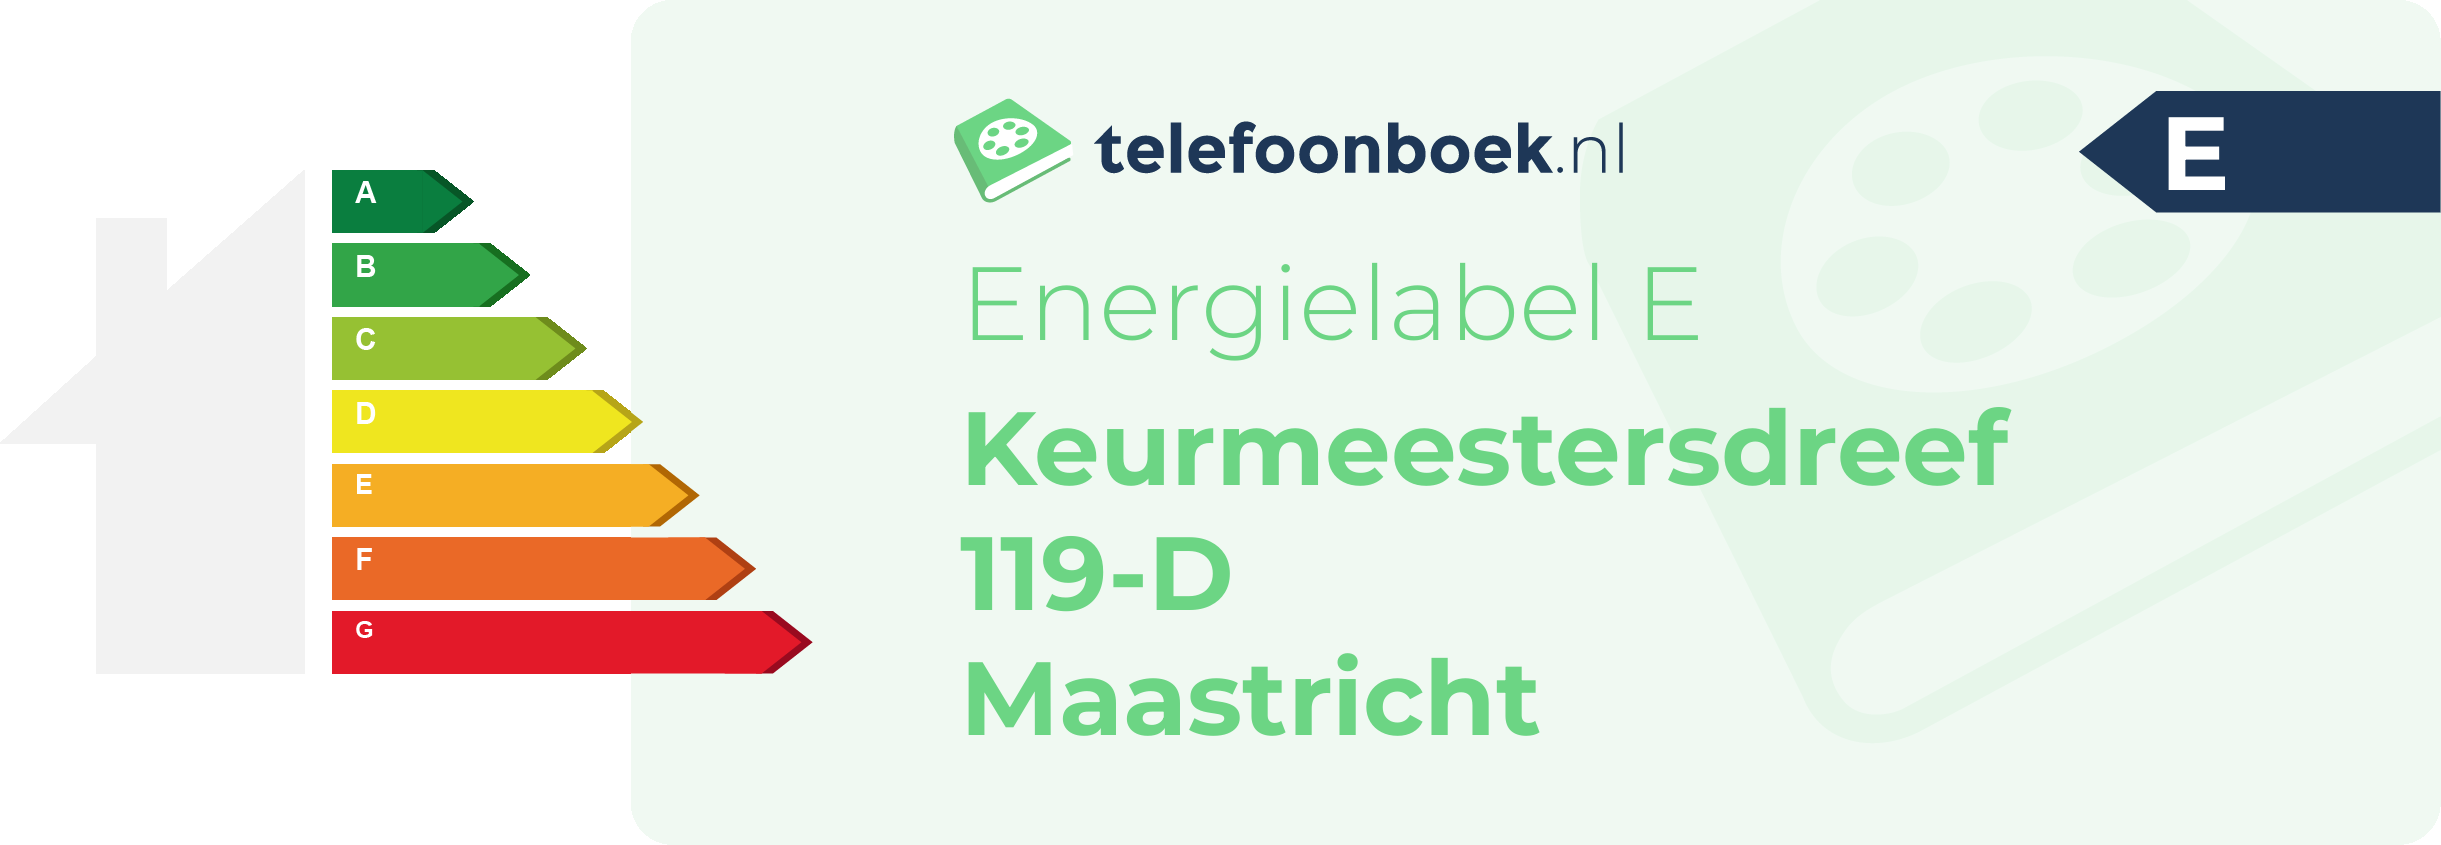 Energielabel Keurmeestersdreef 119-D Maastricht